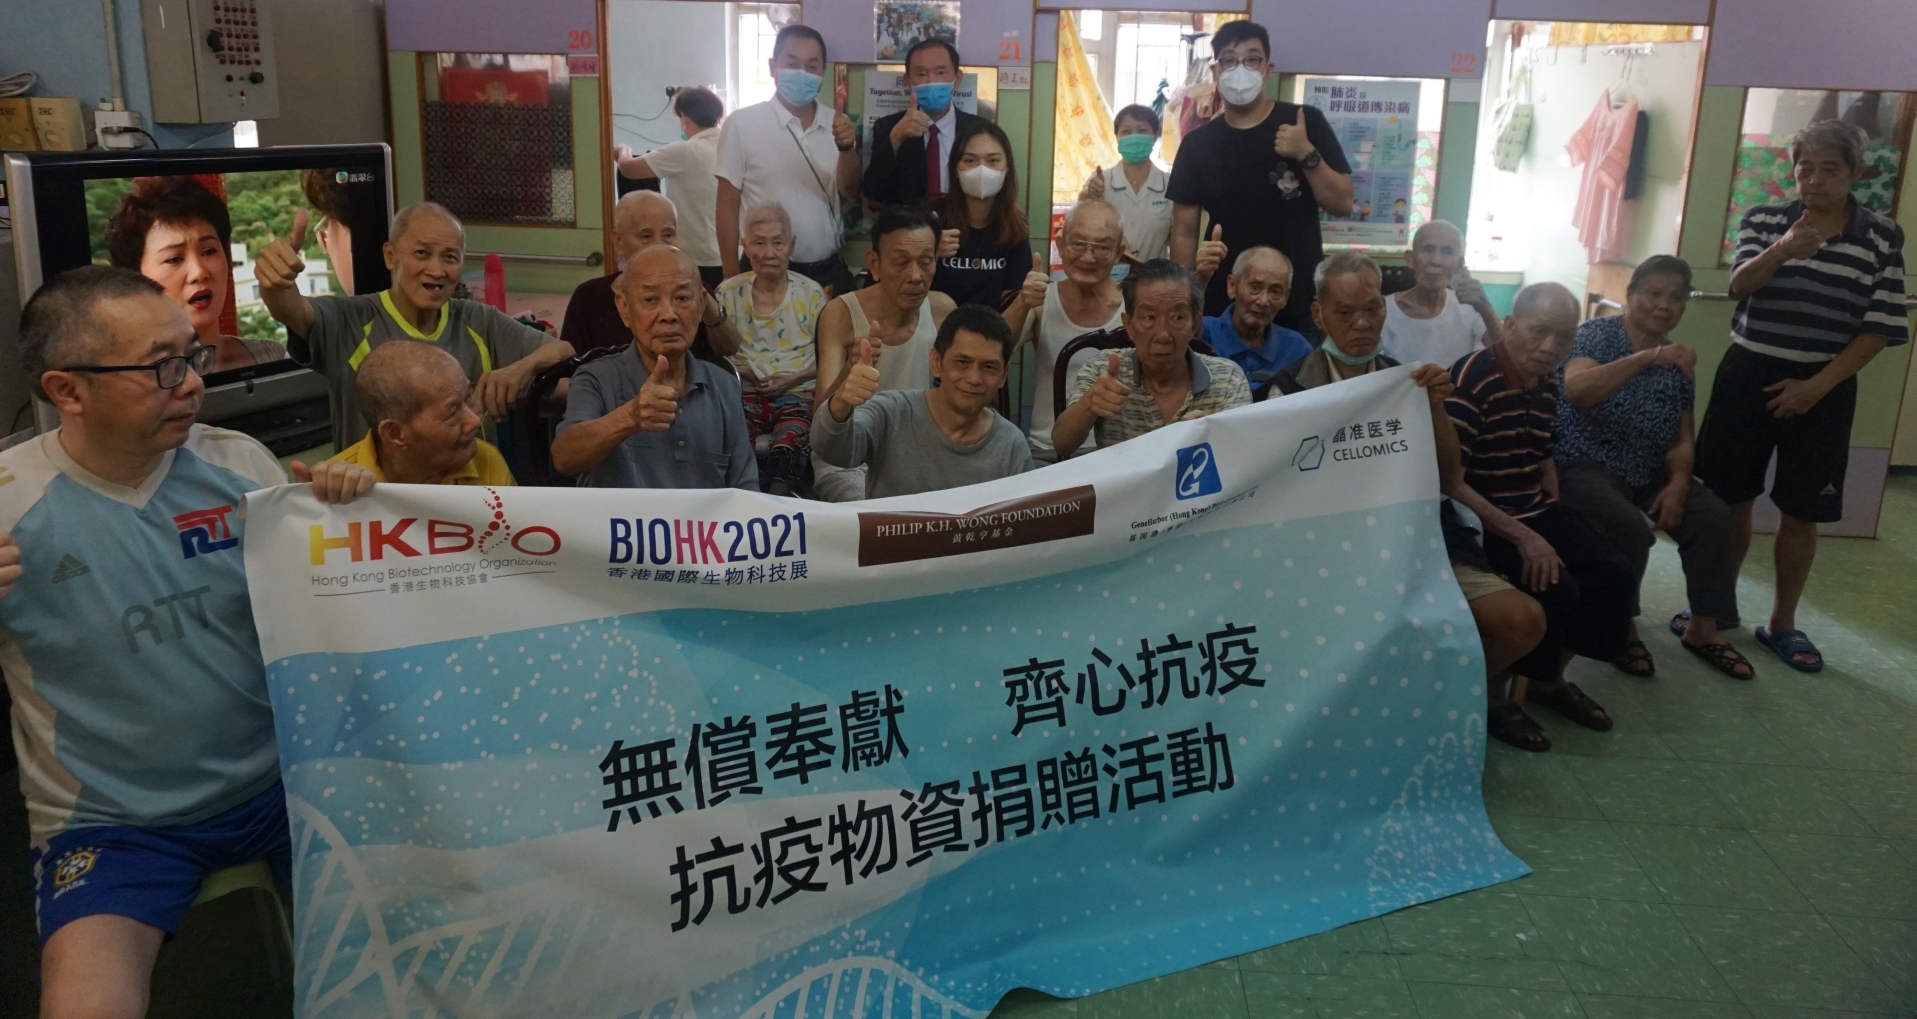 無償奉獻 齊心抗疫 香港生物科技協會全力支援弱勢社群抵抗疫病 